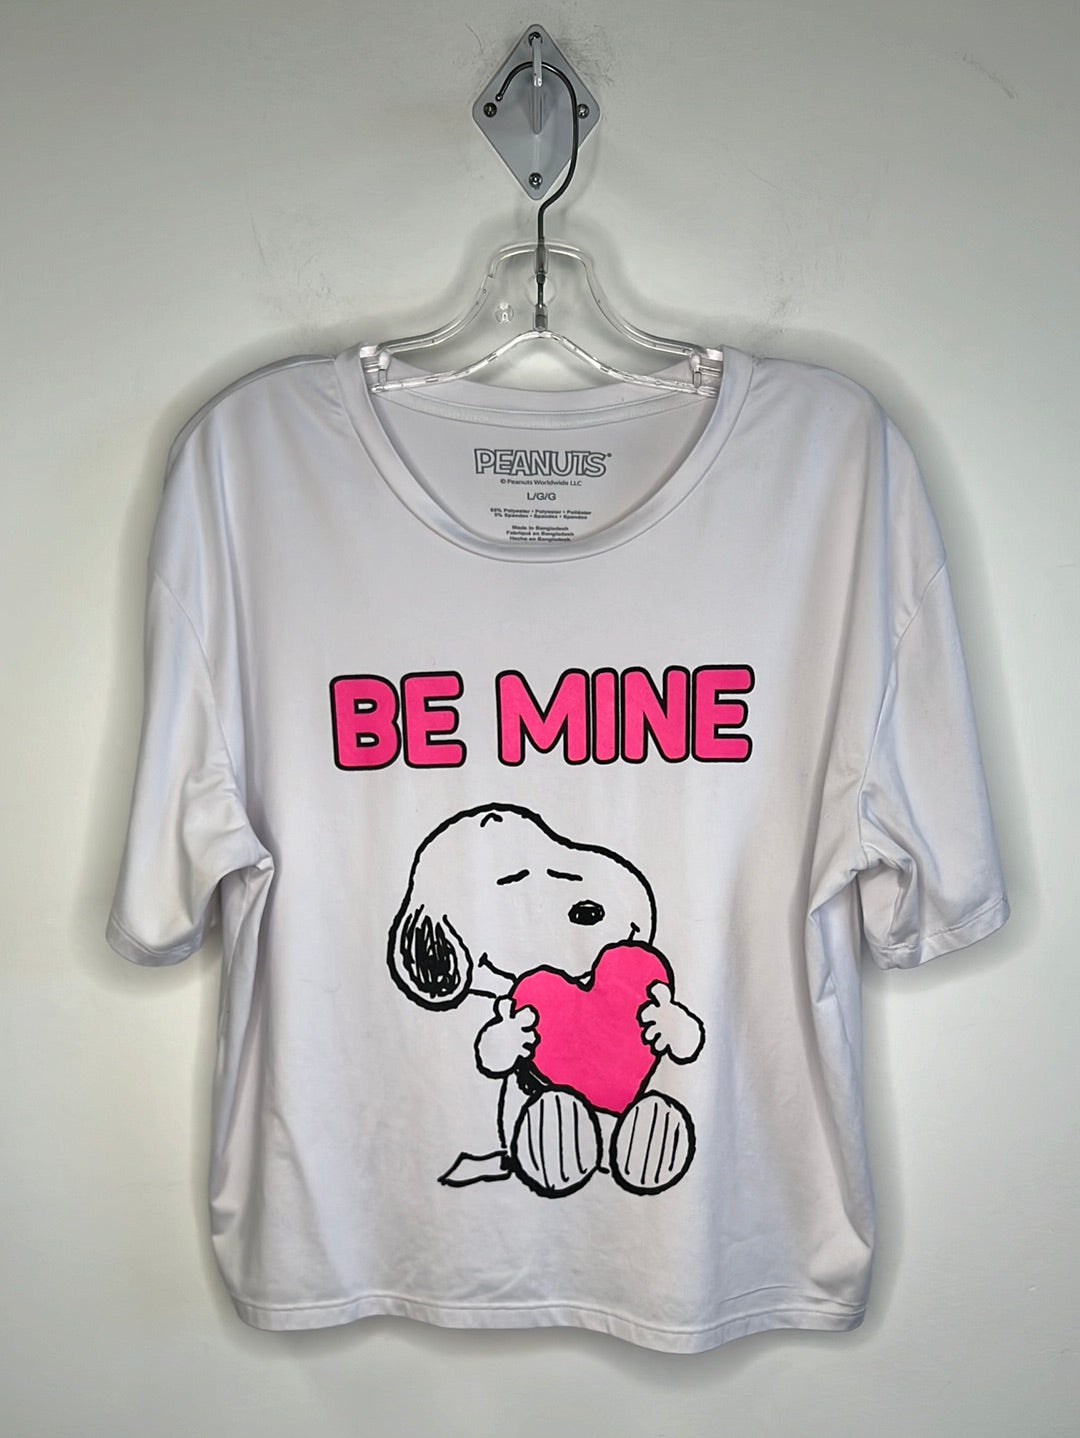 Peanuts Snoopy “Be Mine” T-Shirt (L)